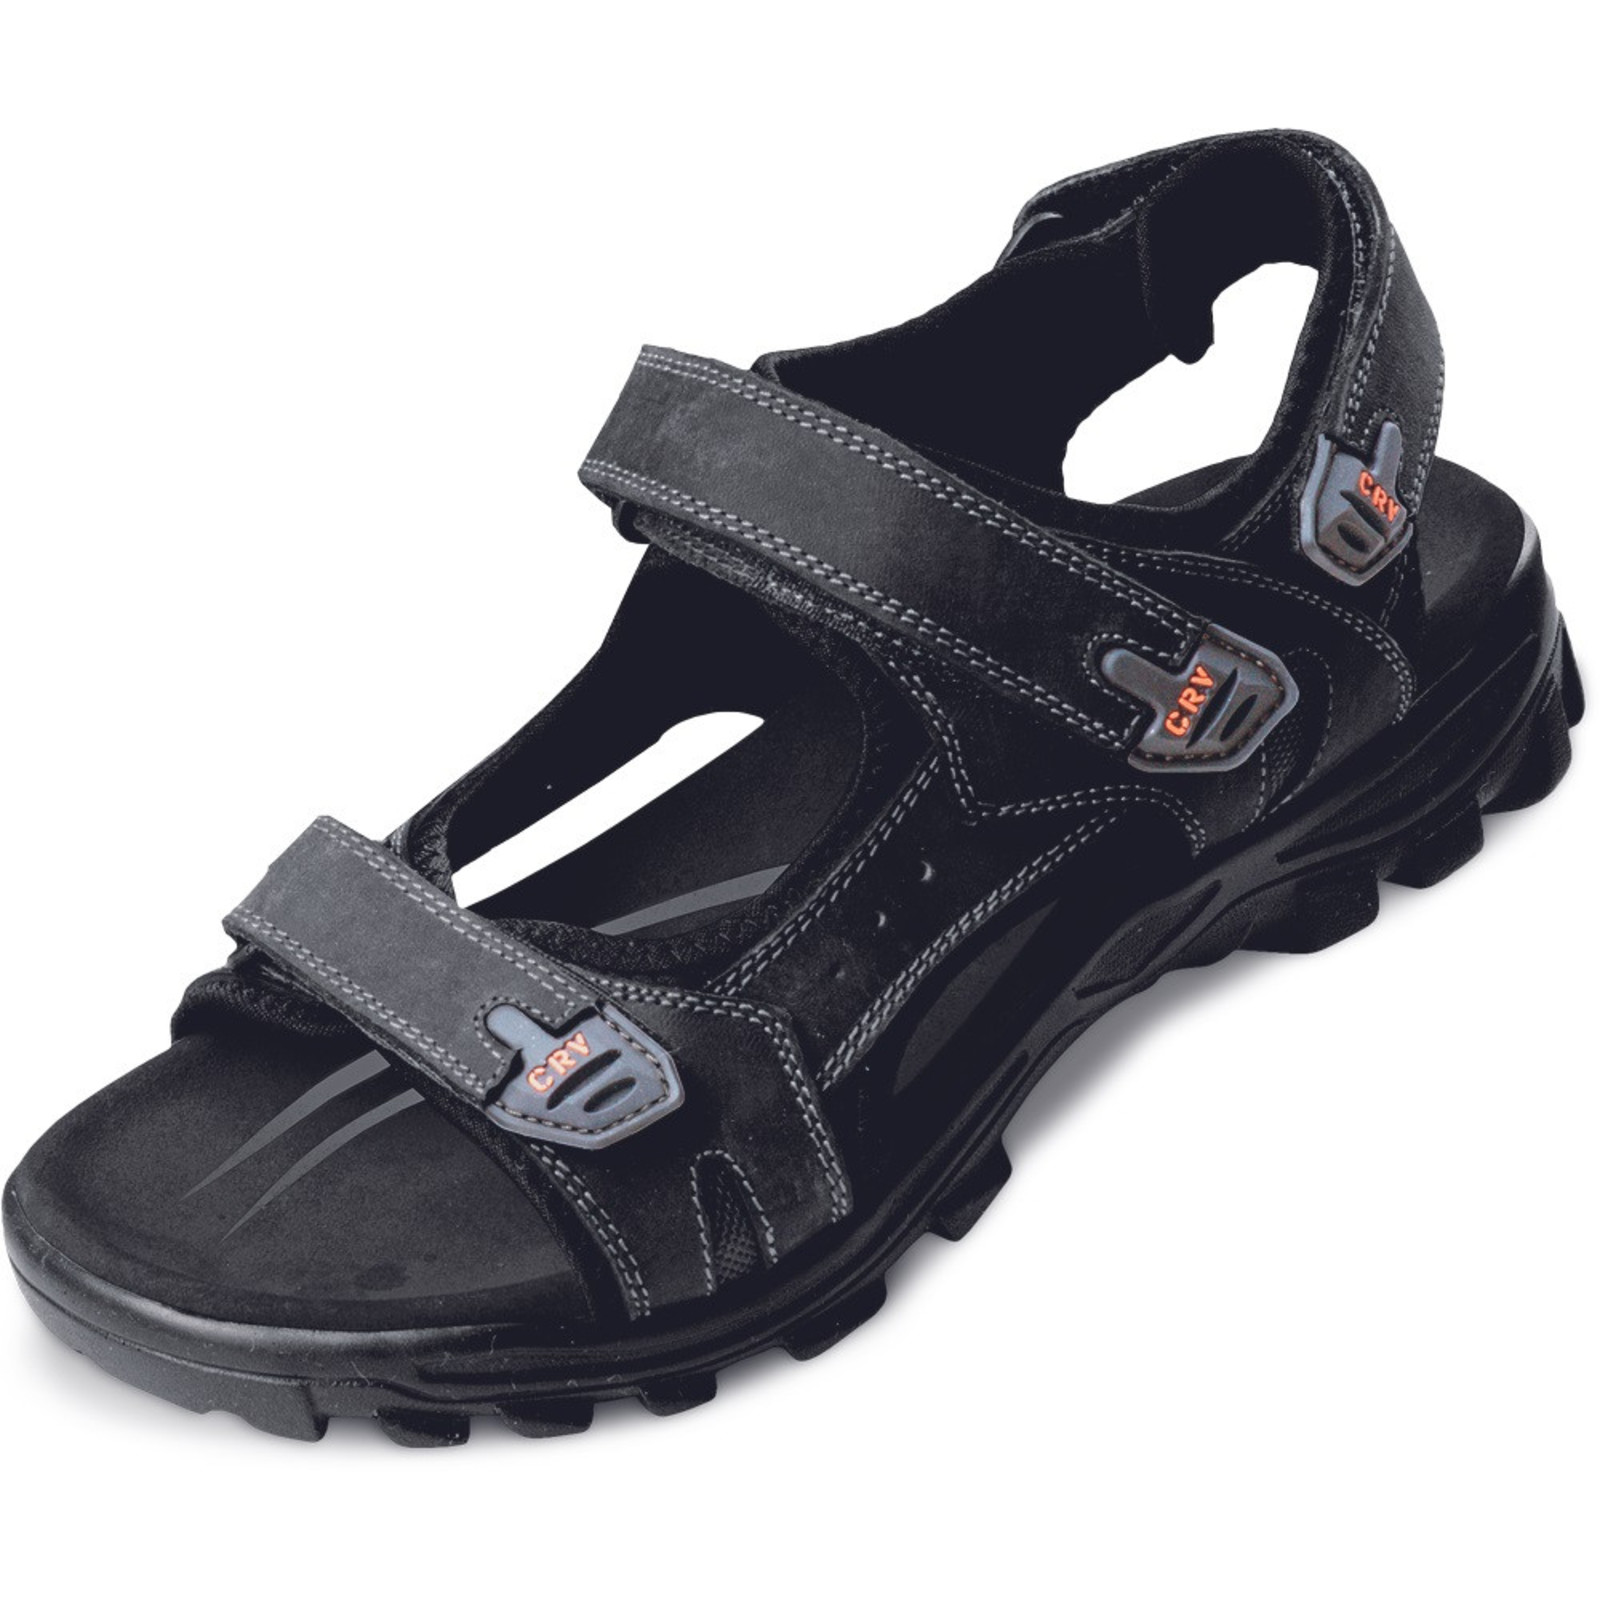 Sandále Wulik CRV pánske - veľkosť: 44, farba: čierna